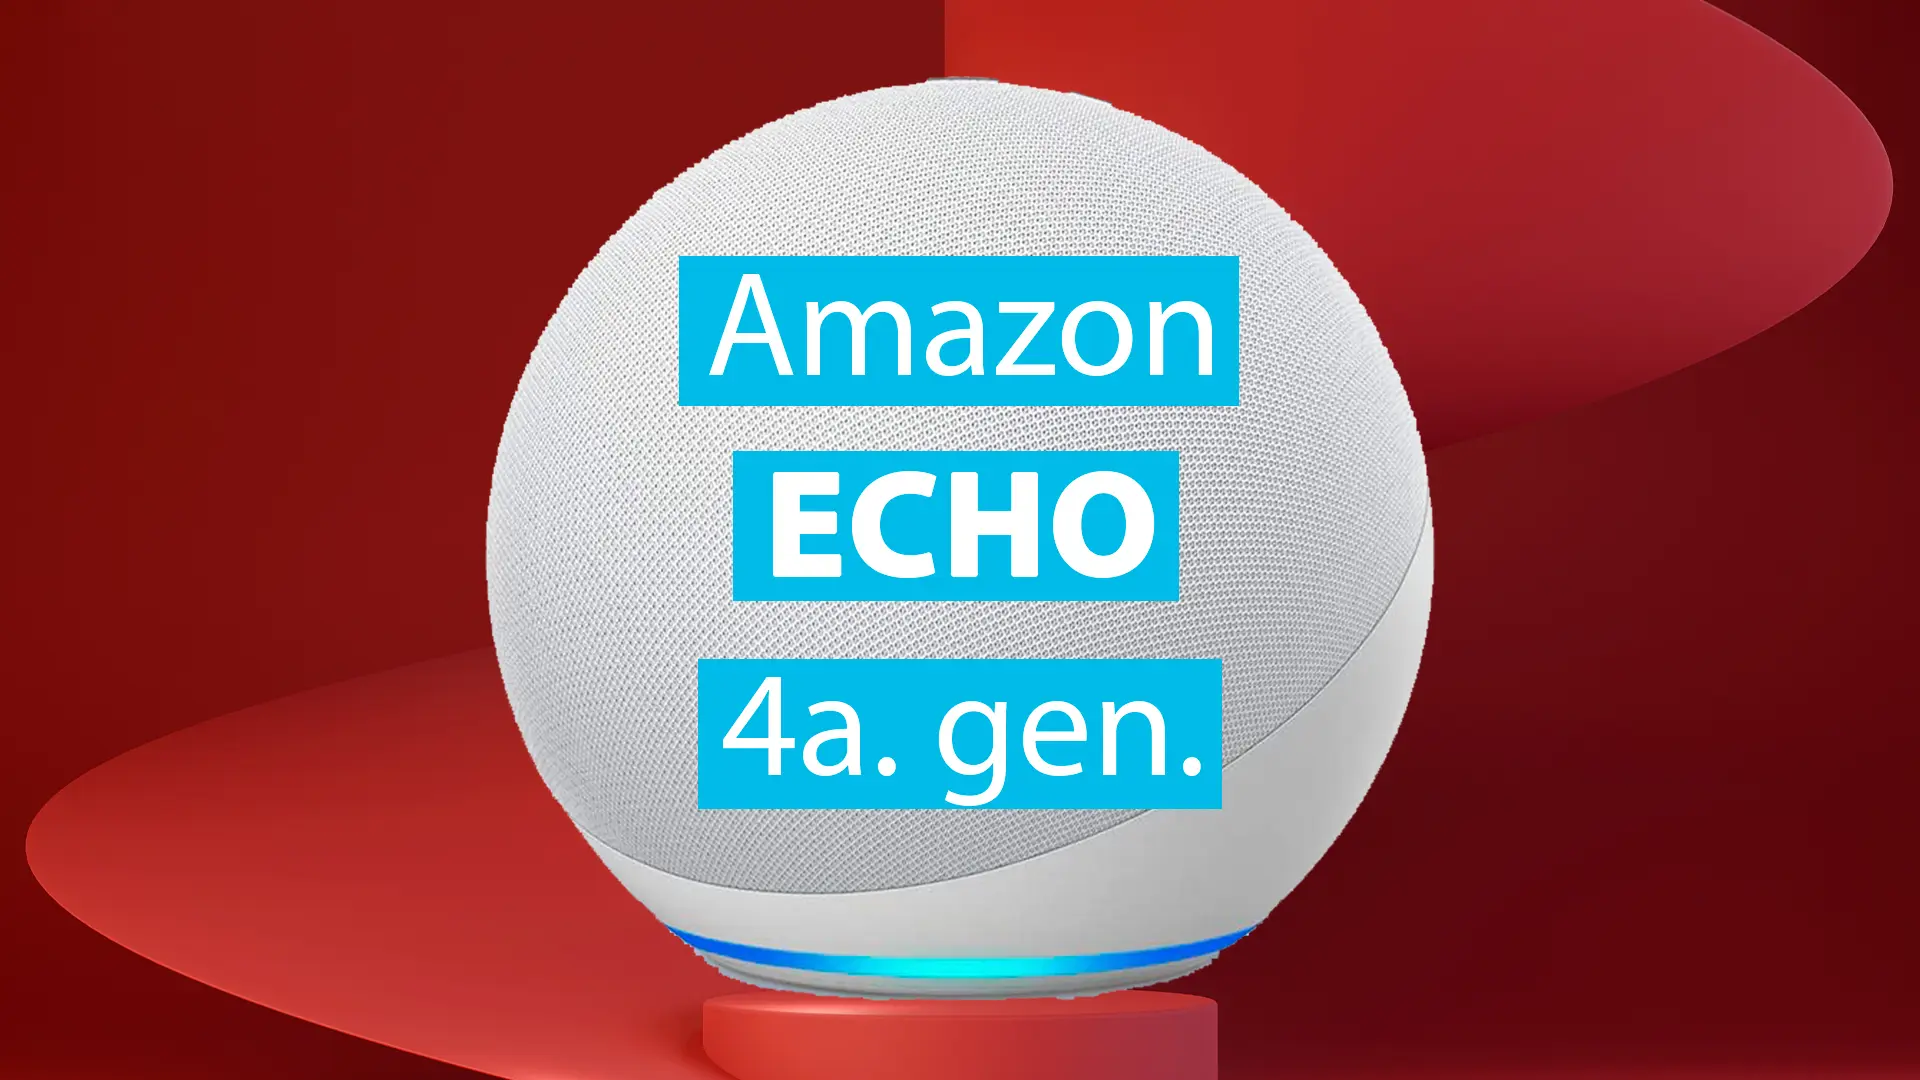 Amazon Echo 4a. gen., el equilibrio perfecto entre funcionalidad y precio